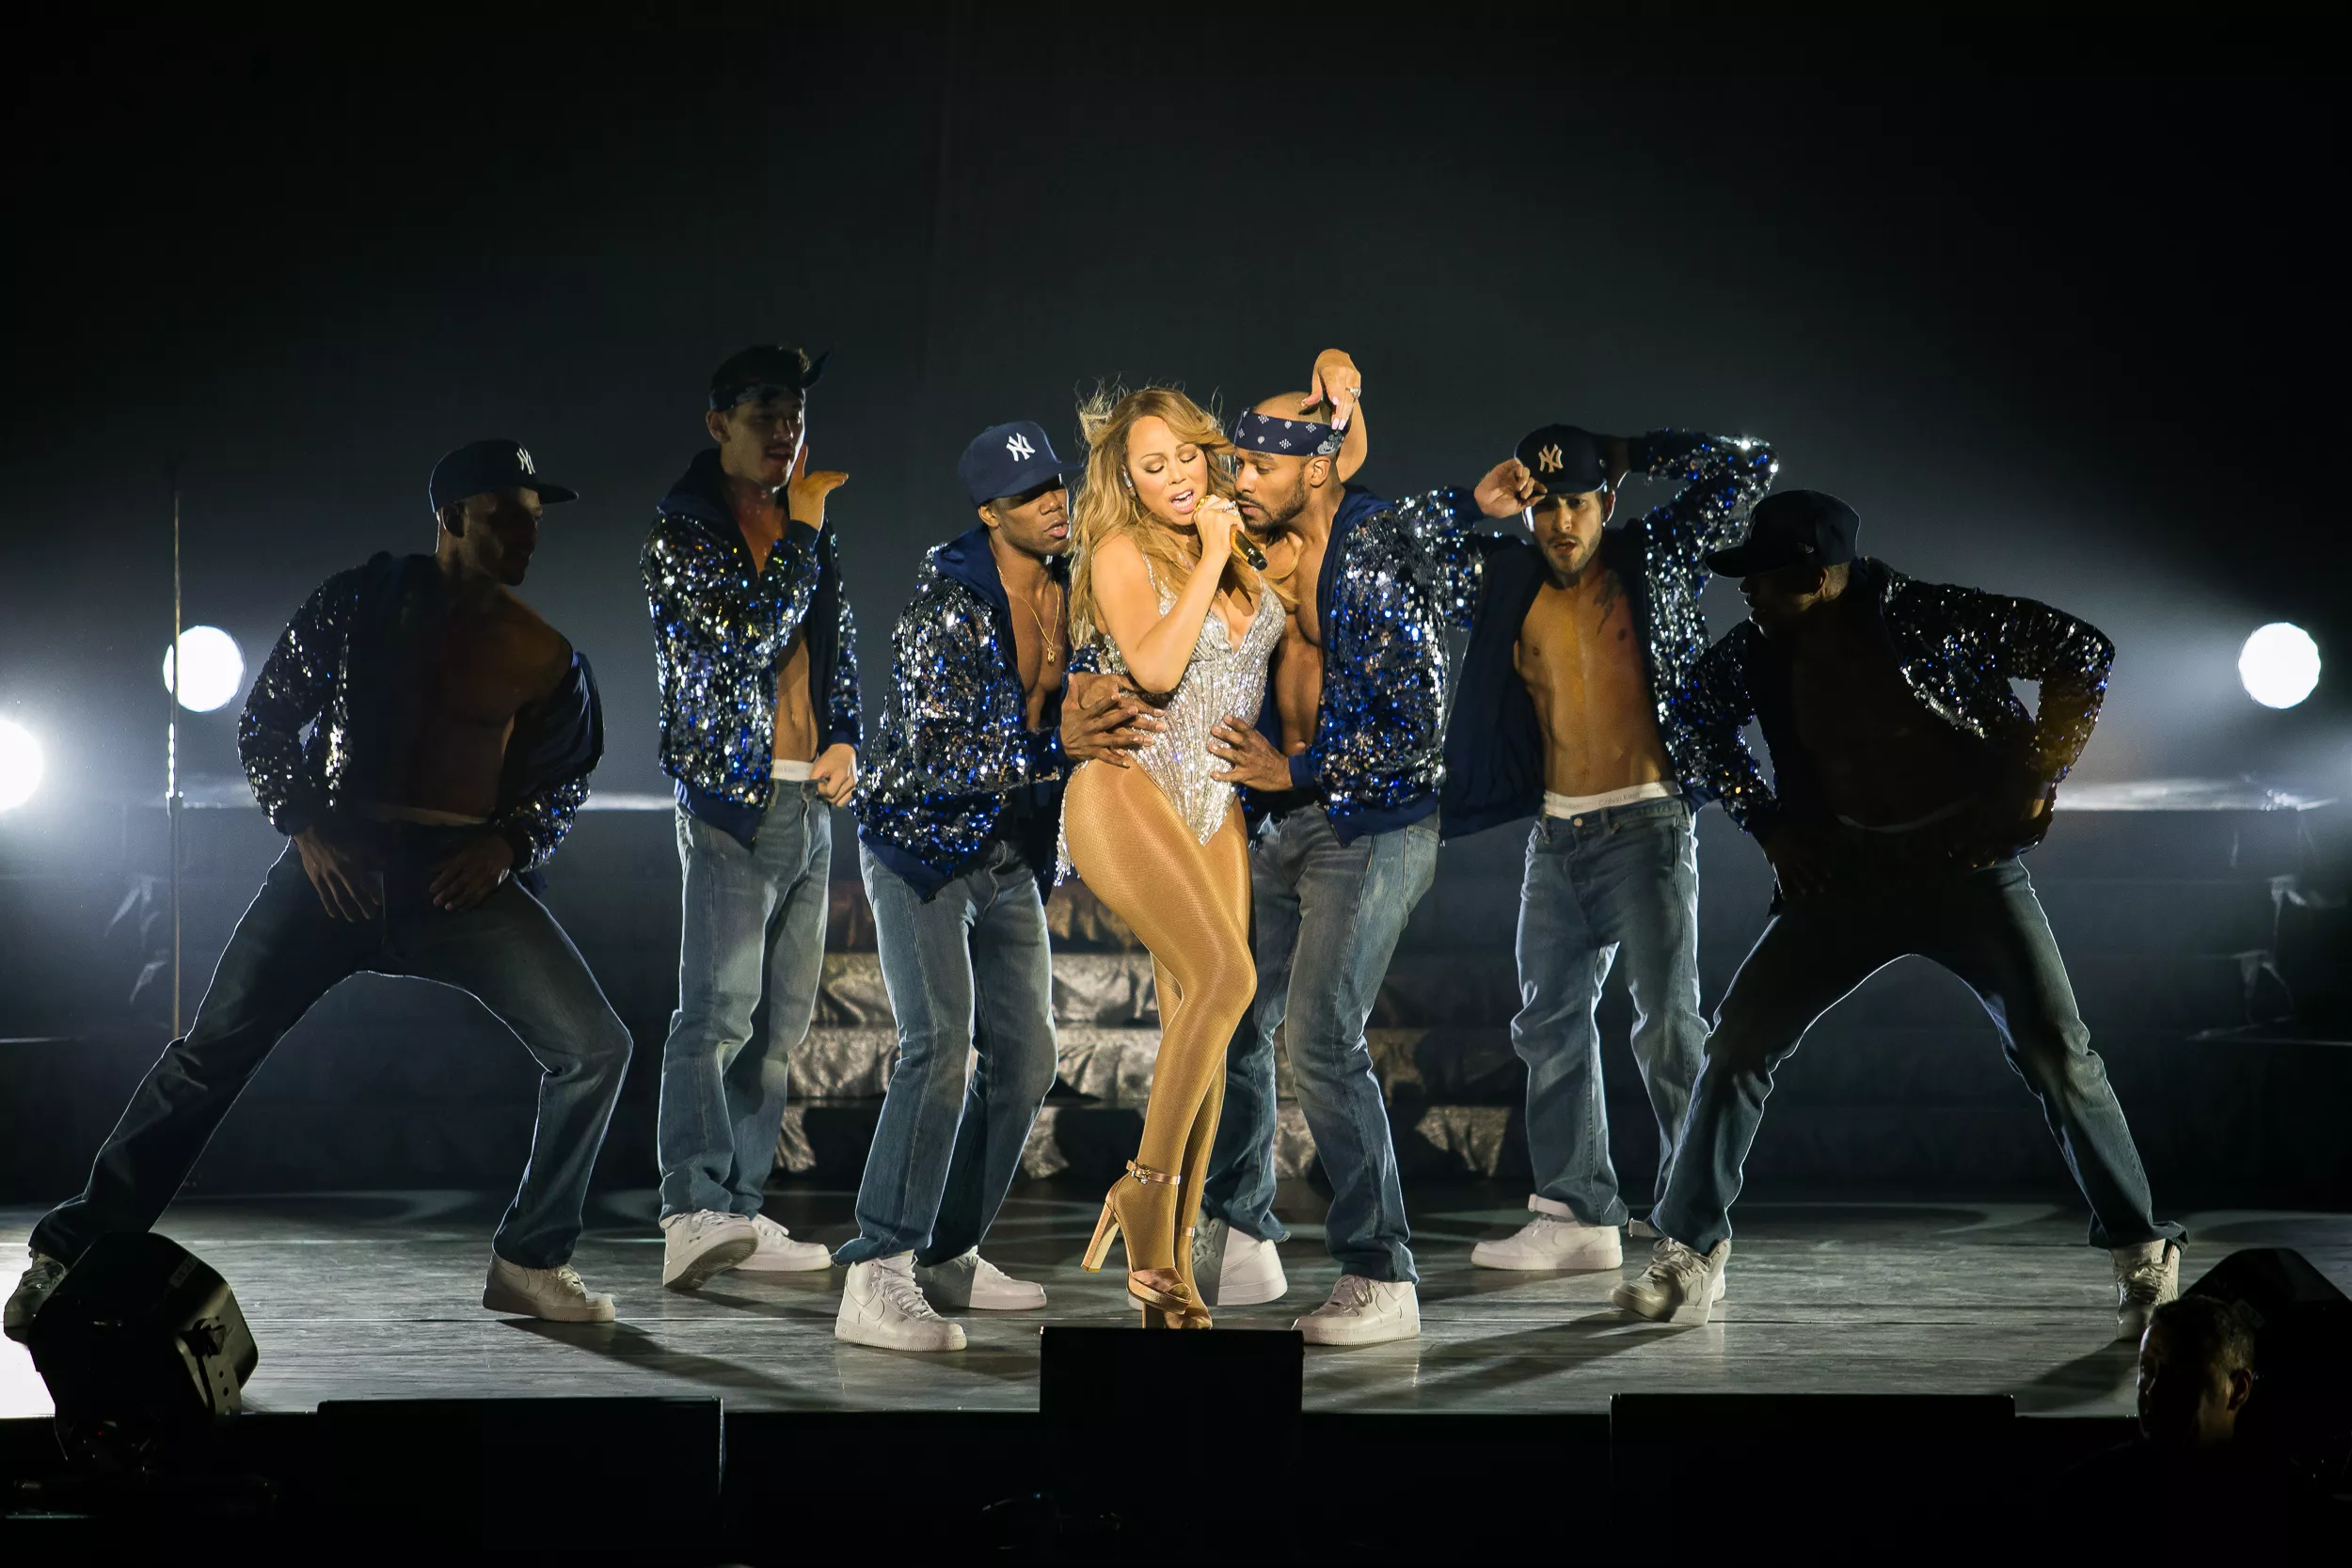 Førre gong gjekk alt gale: No vender Mariah Carey tilbake til Times Square